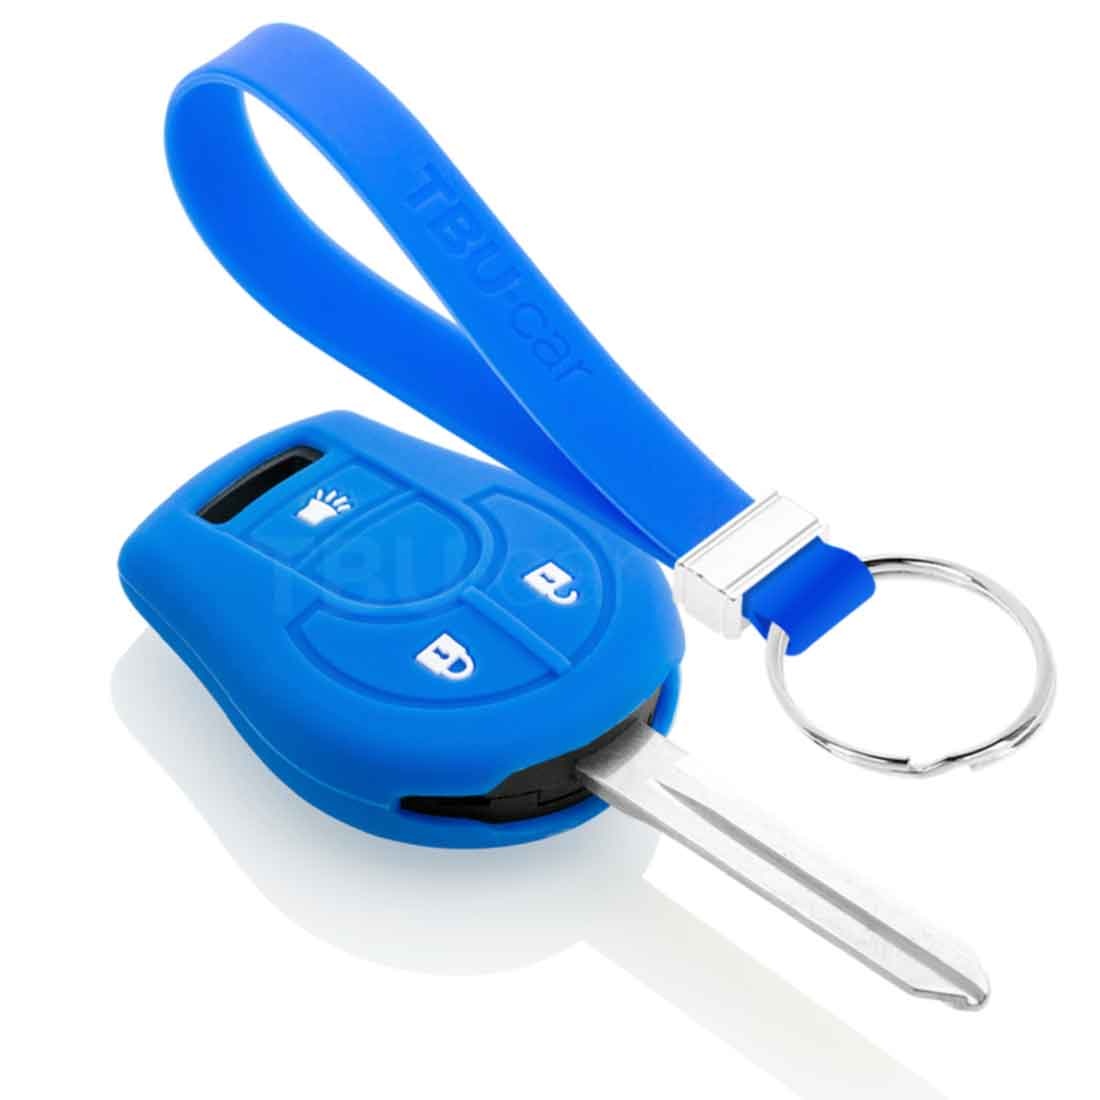 TBU car TBU car Funda Carcasa llave compatible con Nissan - Funda de Silicona - Cover de Llave Coche - Azul